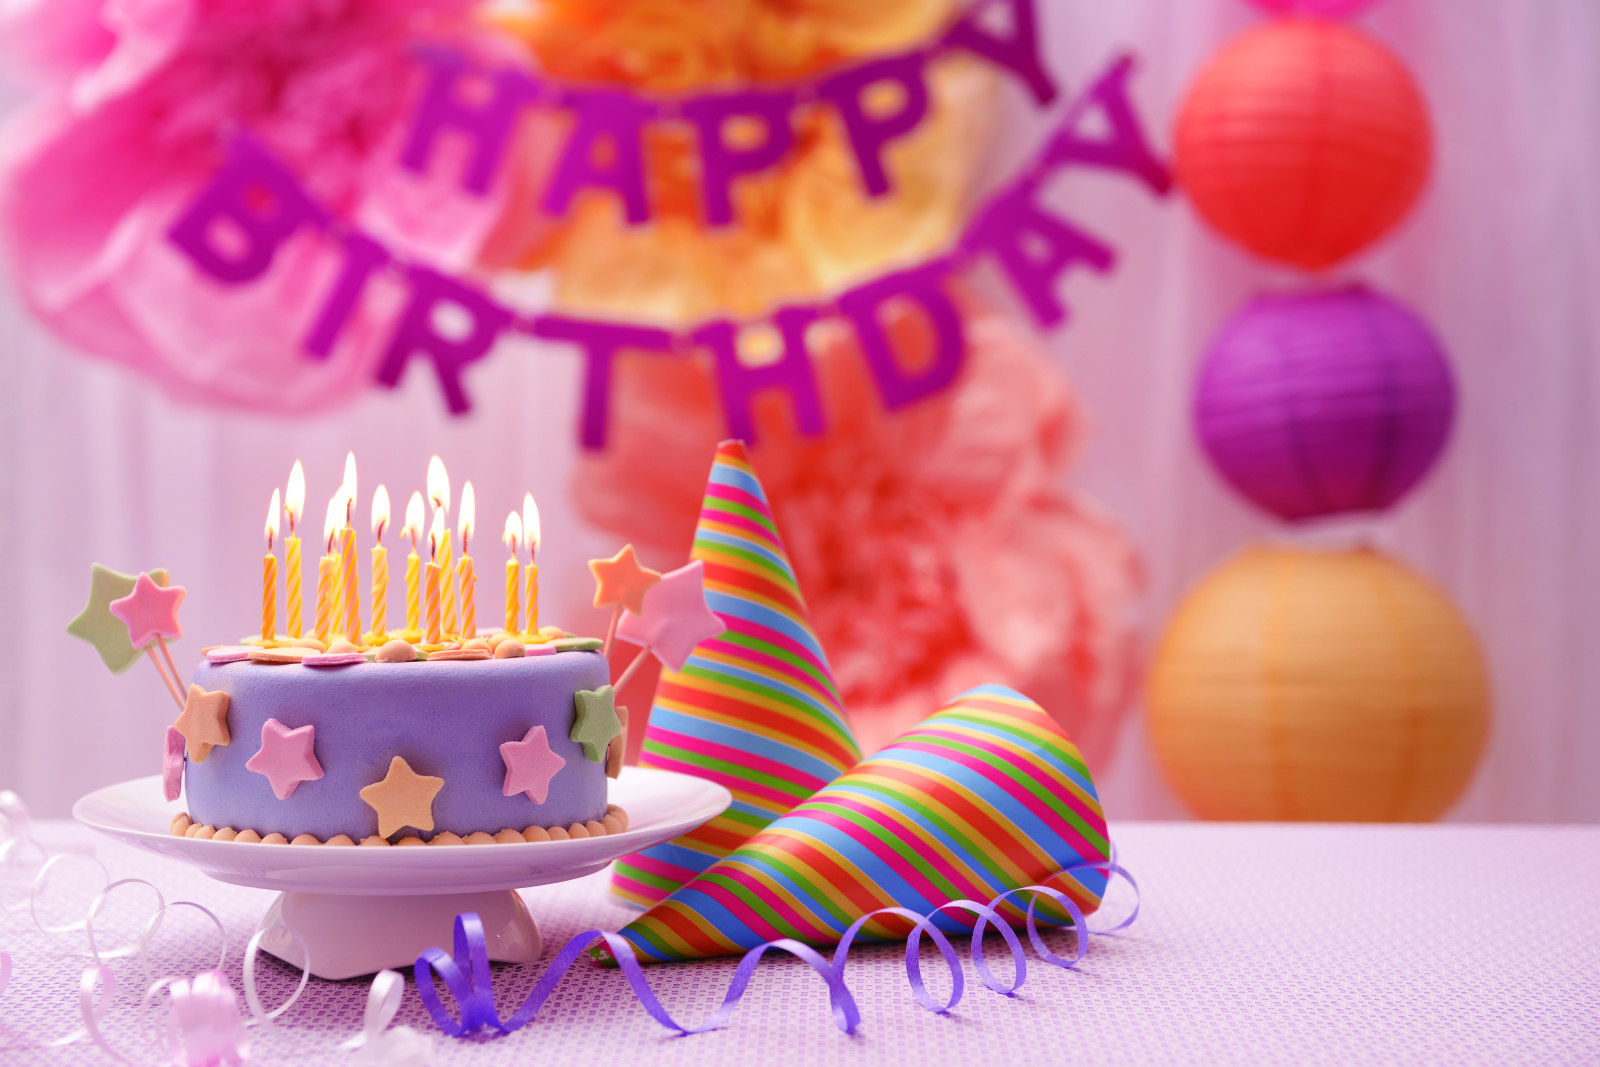 装饰, 快乐, 生日, 蜡烛, 蛋糕, 甜